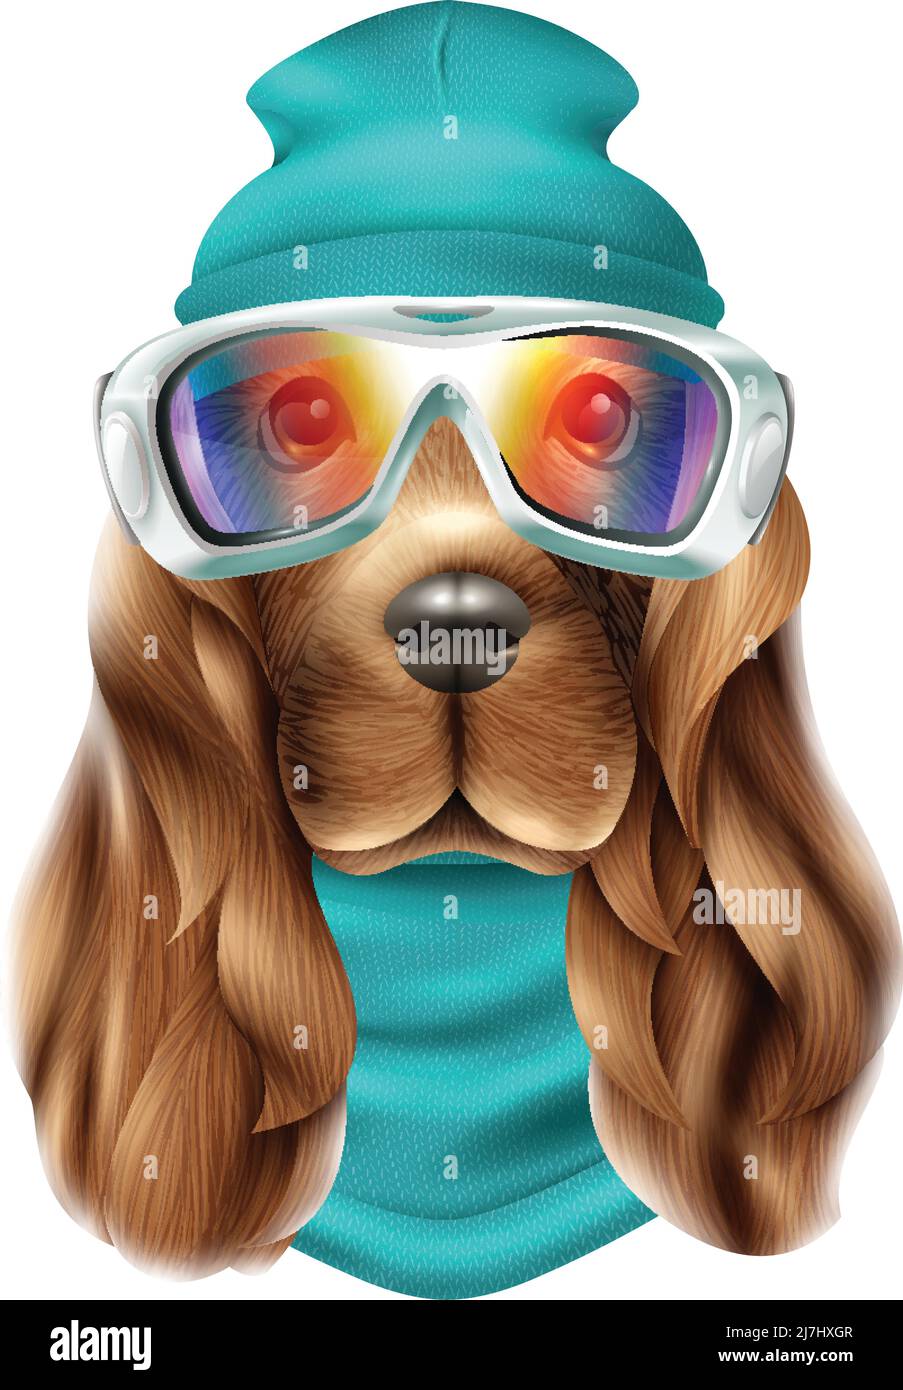 Costume de ski coloré réaliste pour chien de spaniel portrait avec animal mignon et illustration vectorielle de l'équipement de snowboard Illustration de Vecteur